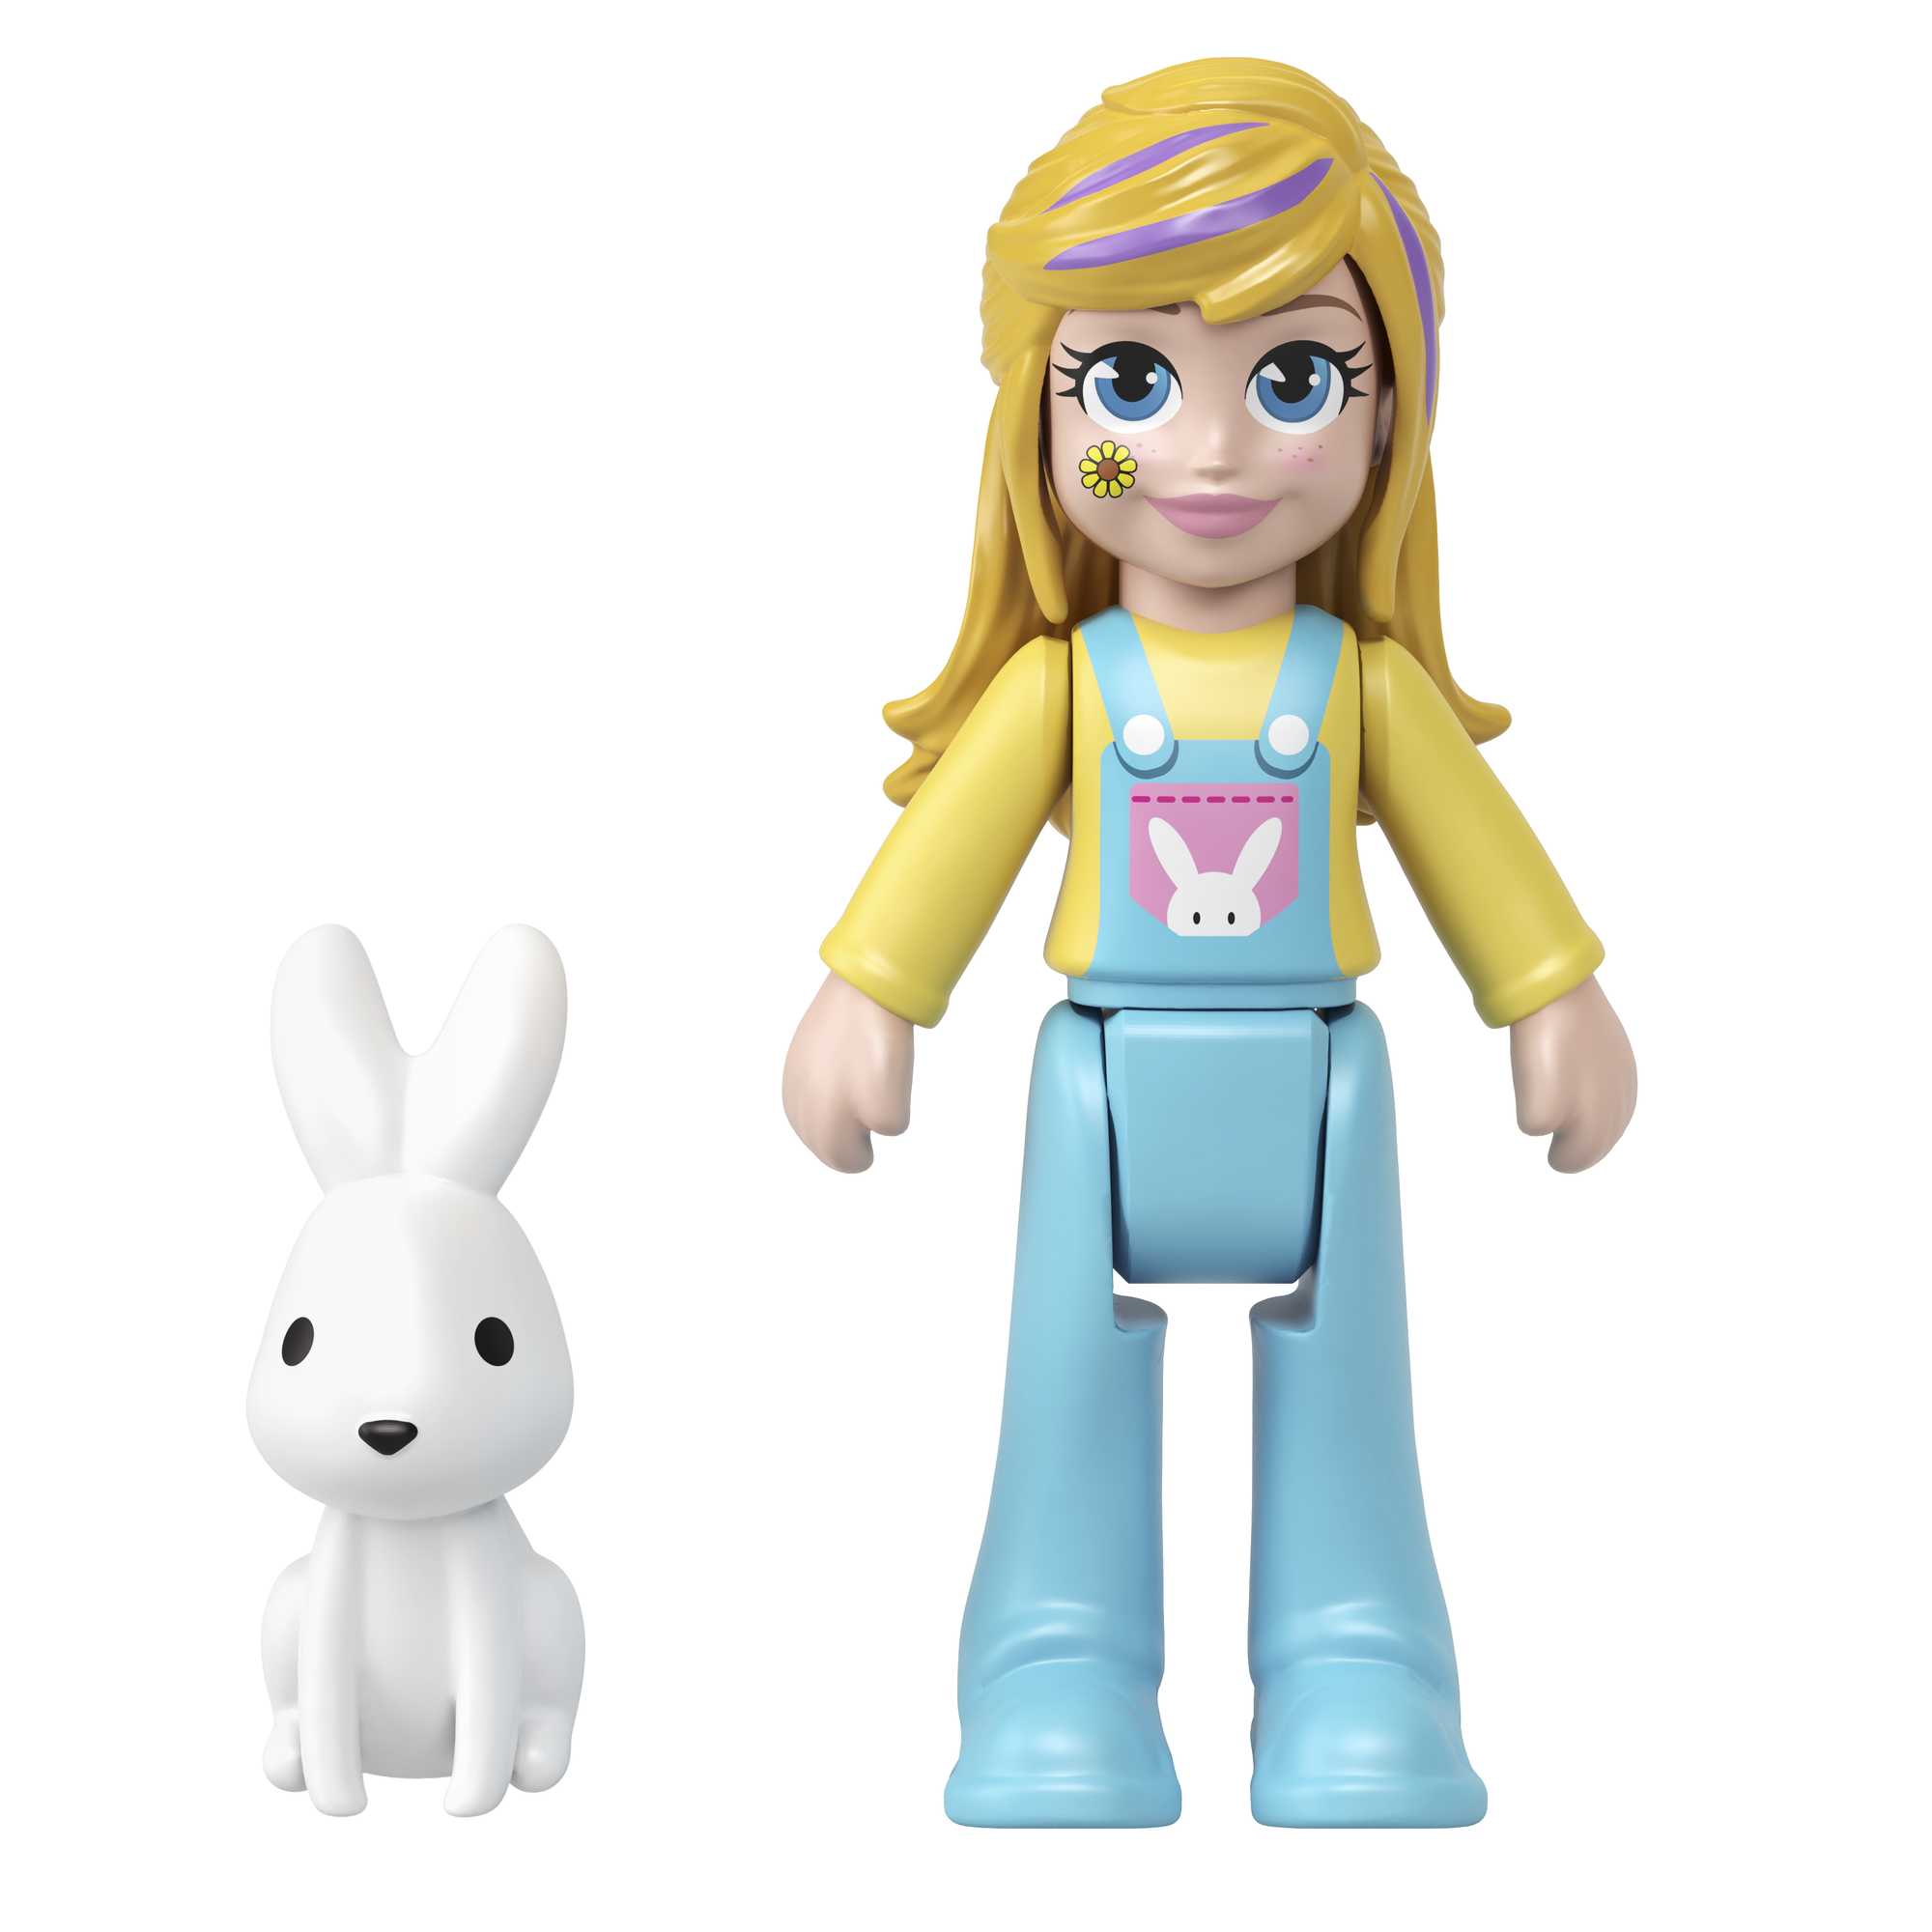 Polly Pocket - Coffret transformable Lapin, avec mini-poupée Polly